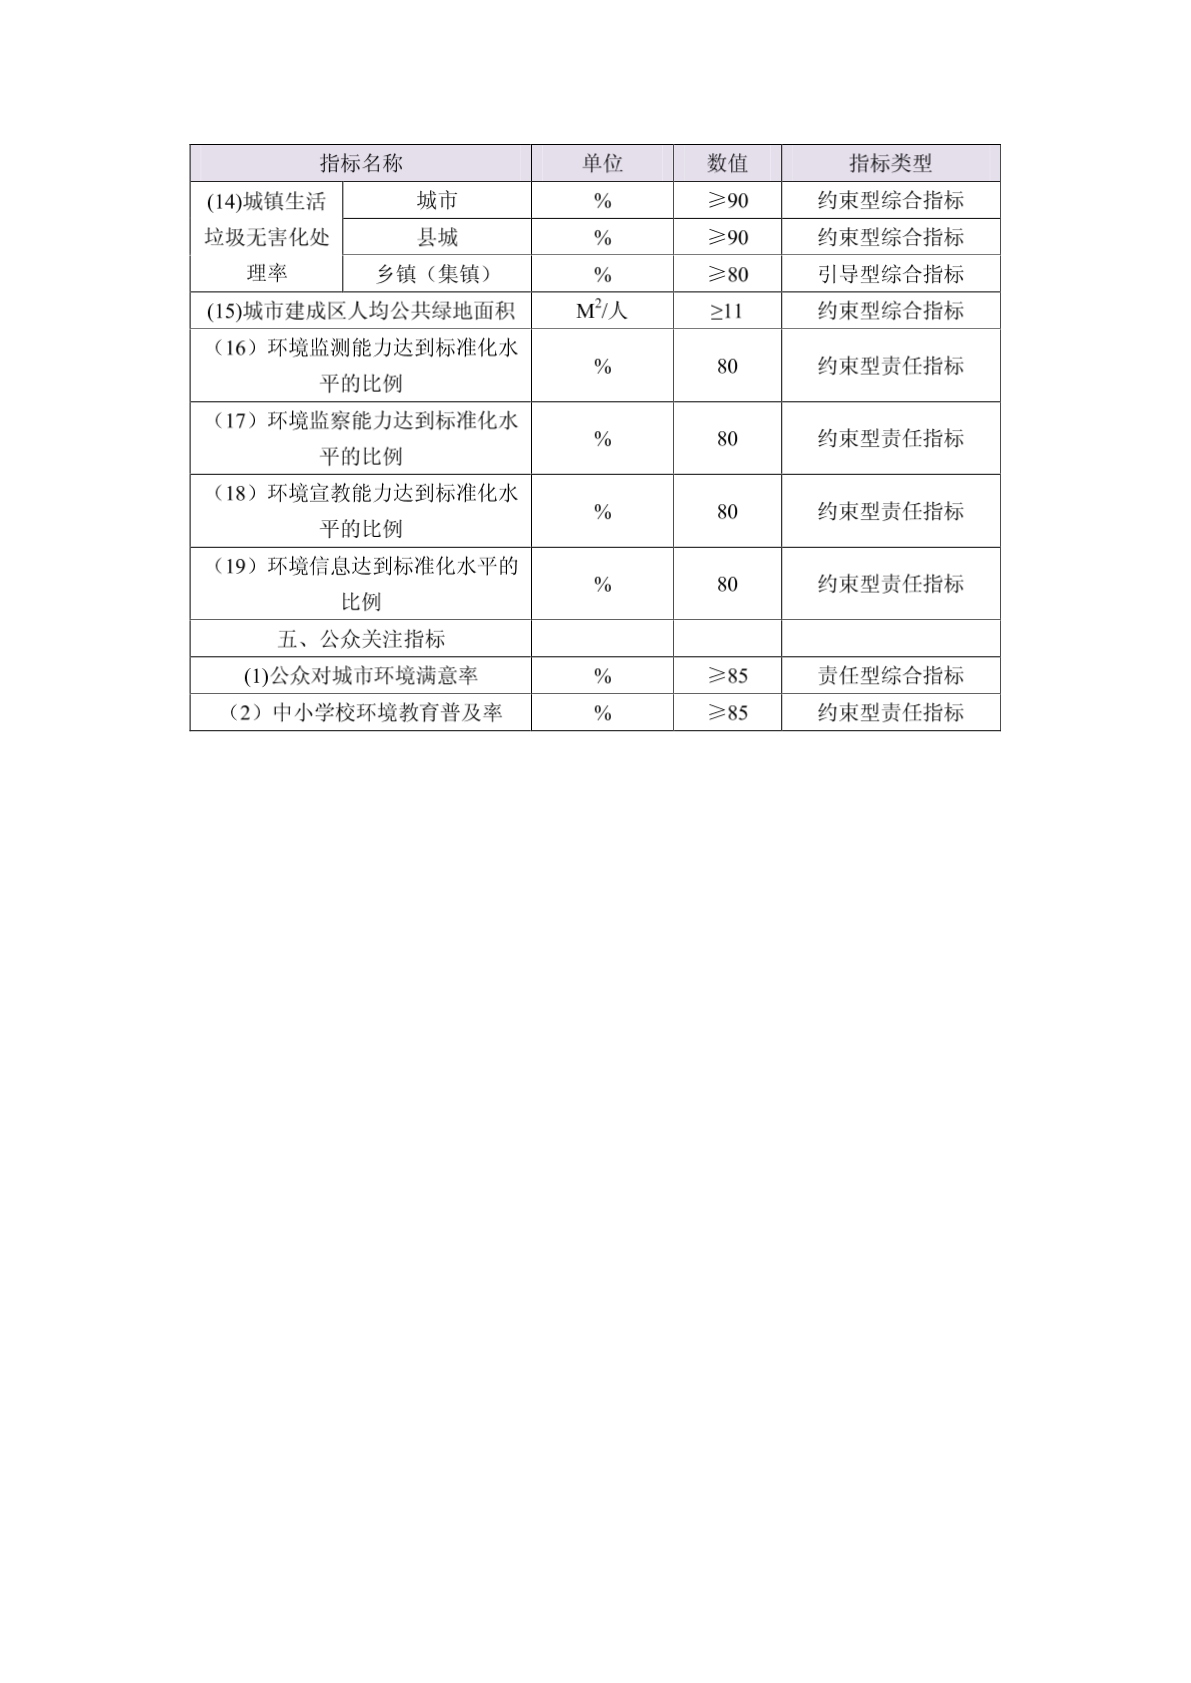 荆州市“十二五”环境保护规划指标体系已确立 - 荆州市环境保护网-图一